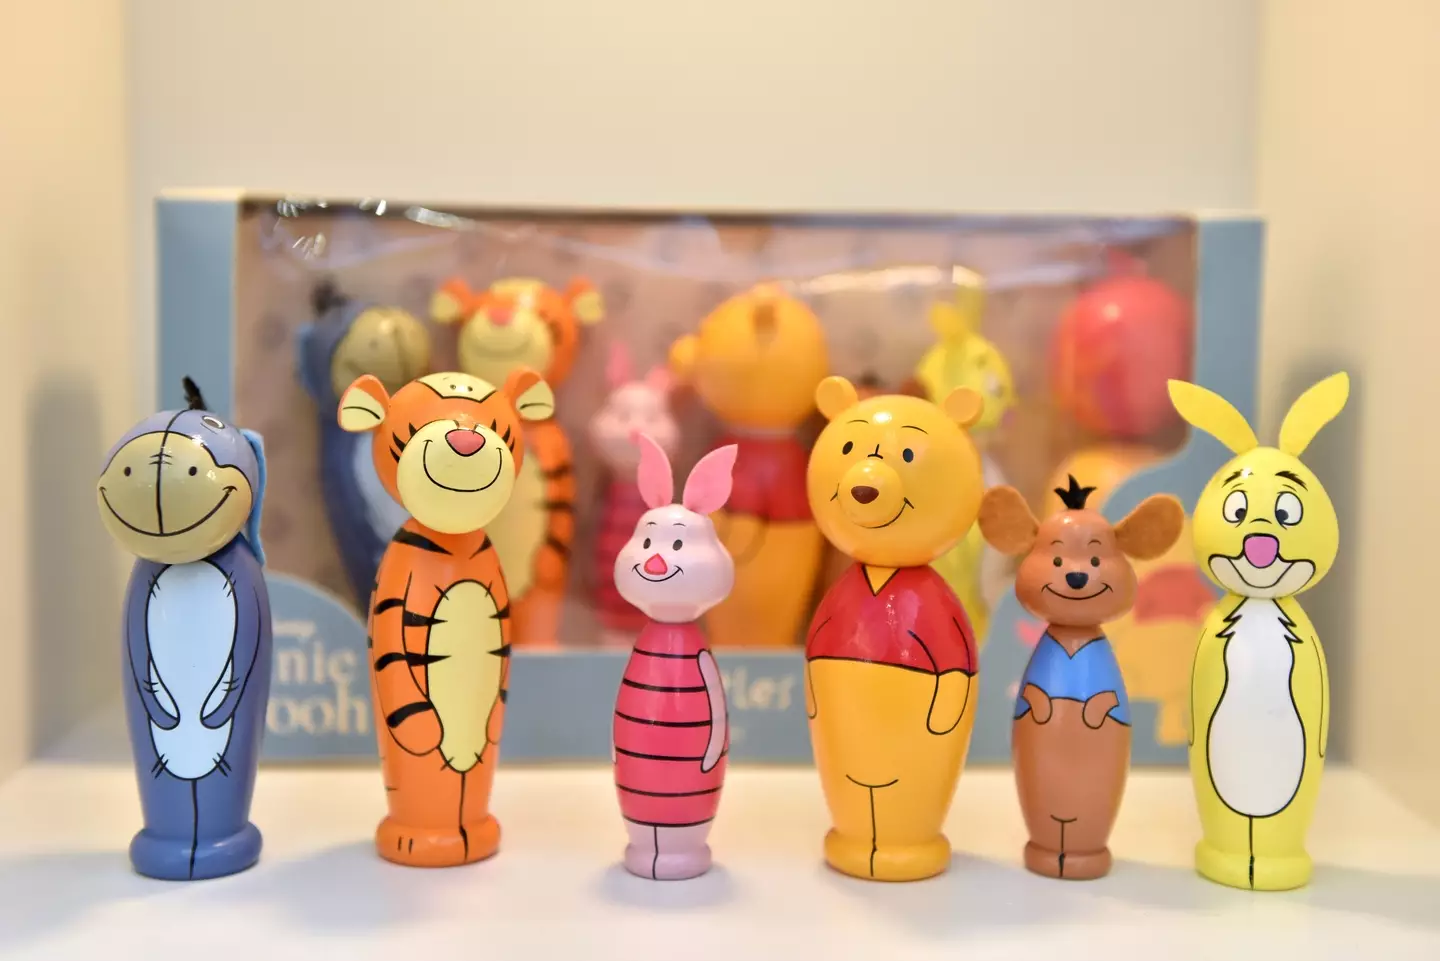 Winnie and his mates are pretty nostalgic.